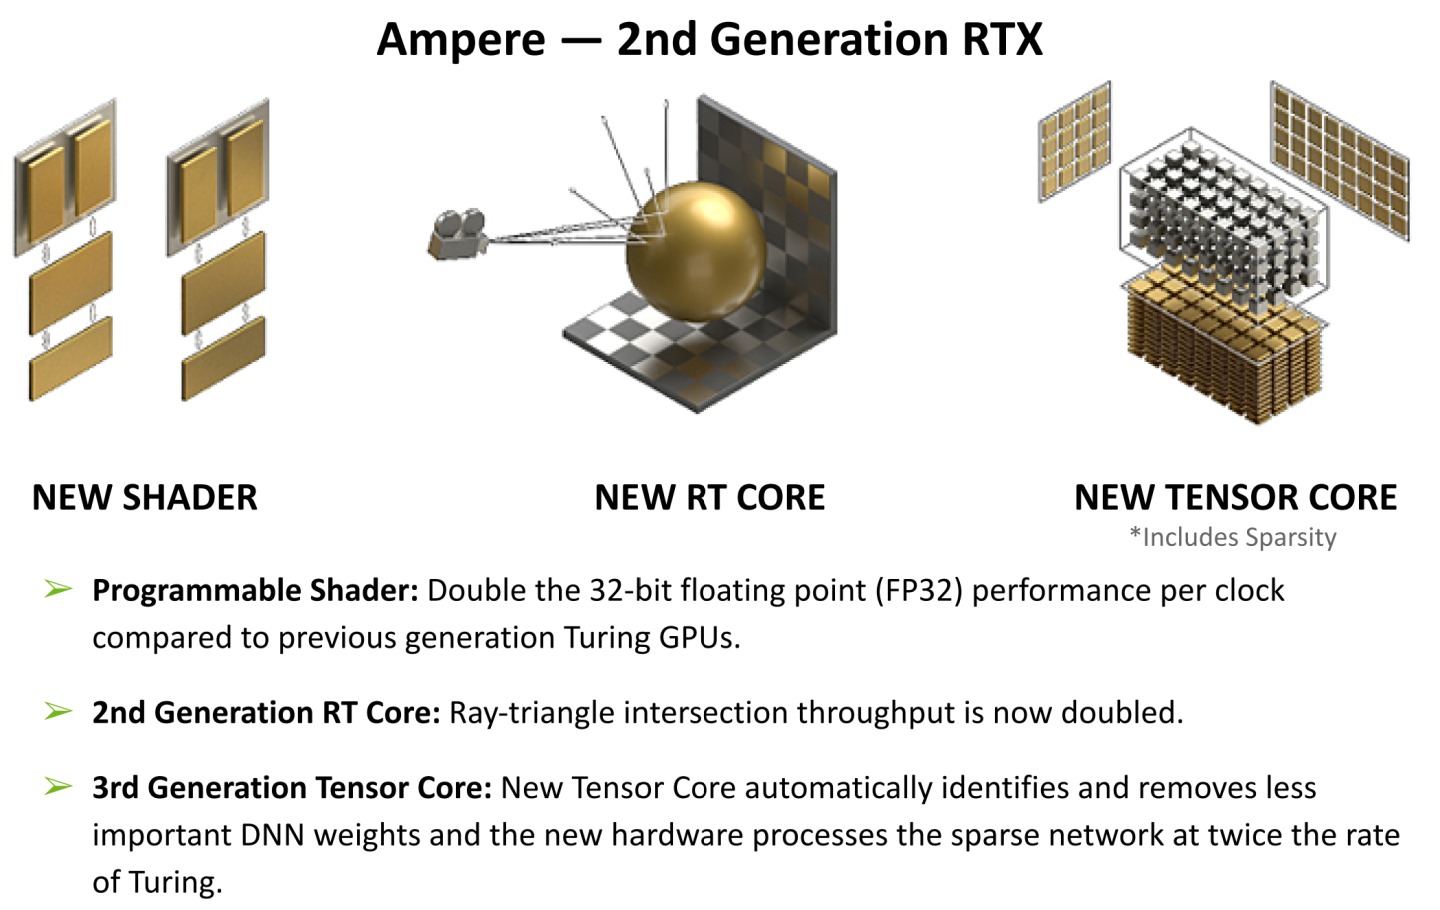 與舊架構相比，Ampere顯示架構具有雙倍的Shader效能，第2代RT Core與第3代Tensor Core能帶來更優異的光線追蹤與AI運算效能。